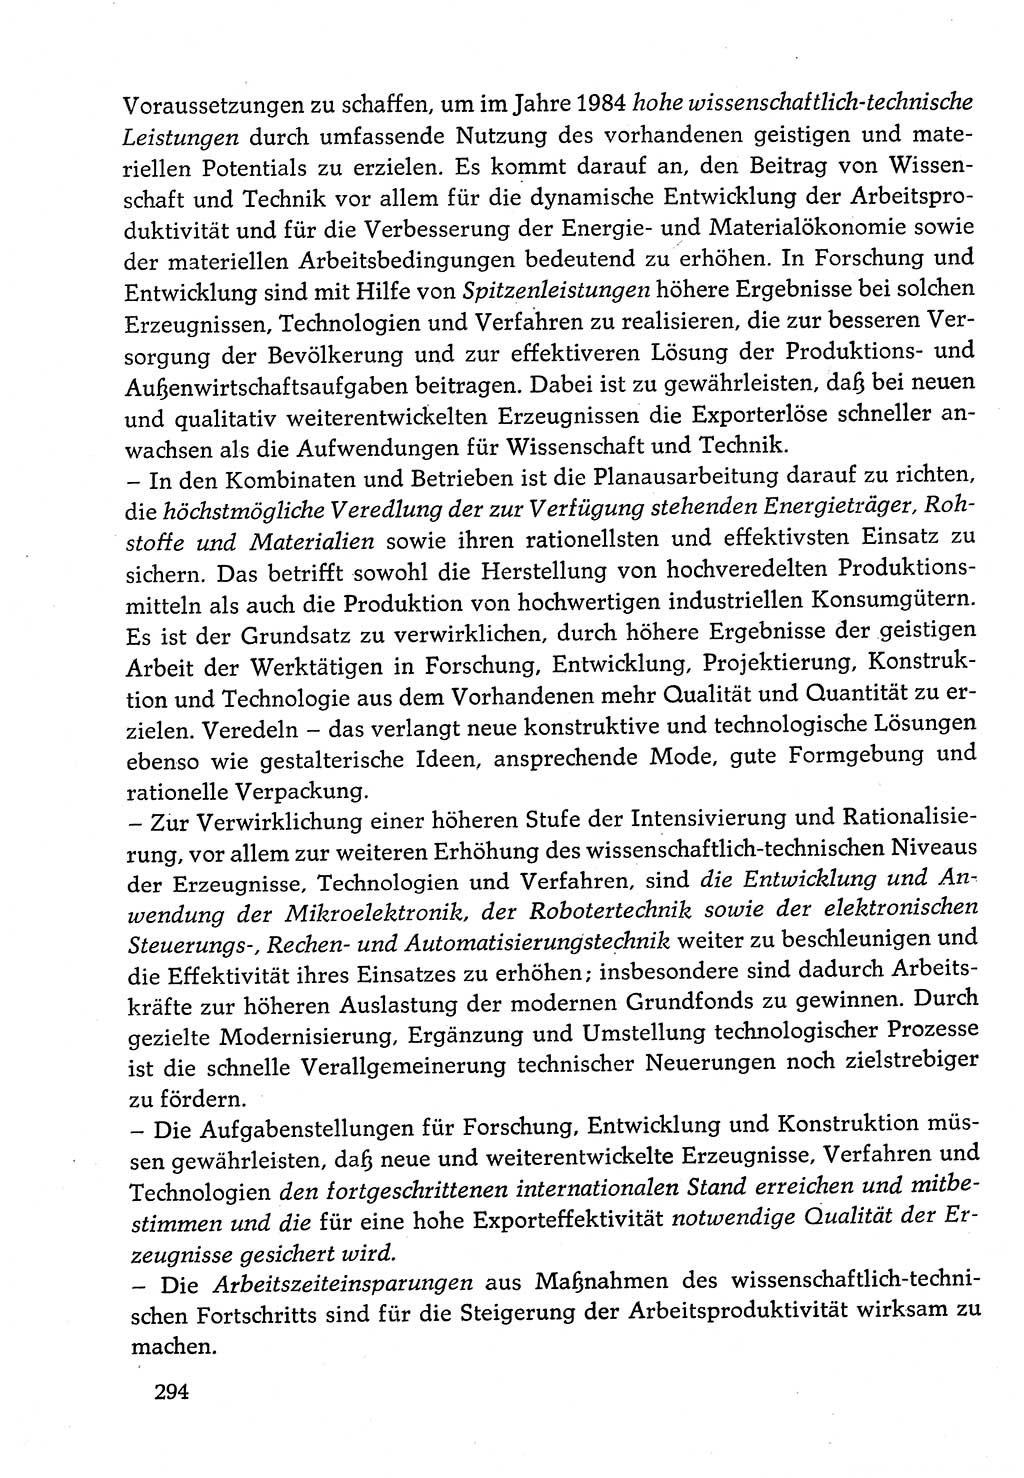 Dokumente der Sozialistischen Einheitspartei Deutschlands (SED) [Deutsche Demokratische Republik (DDR)] 1982-1983, Seite 294 (Dok. SED DDR 1982-1983, S. 294)